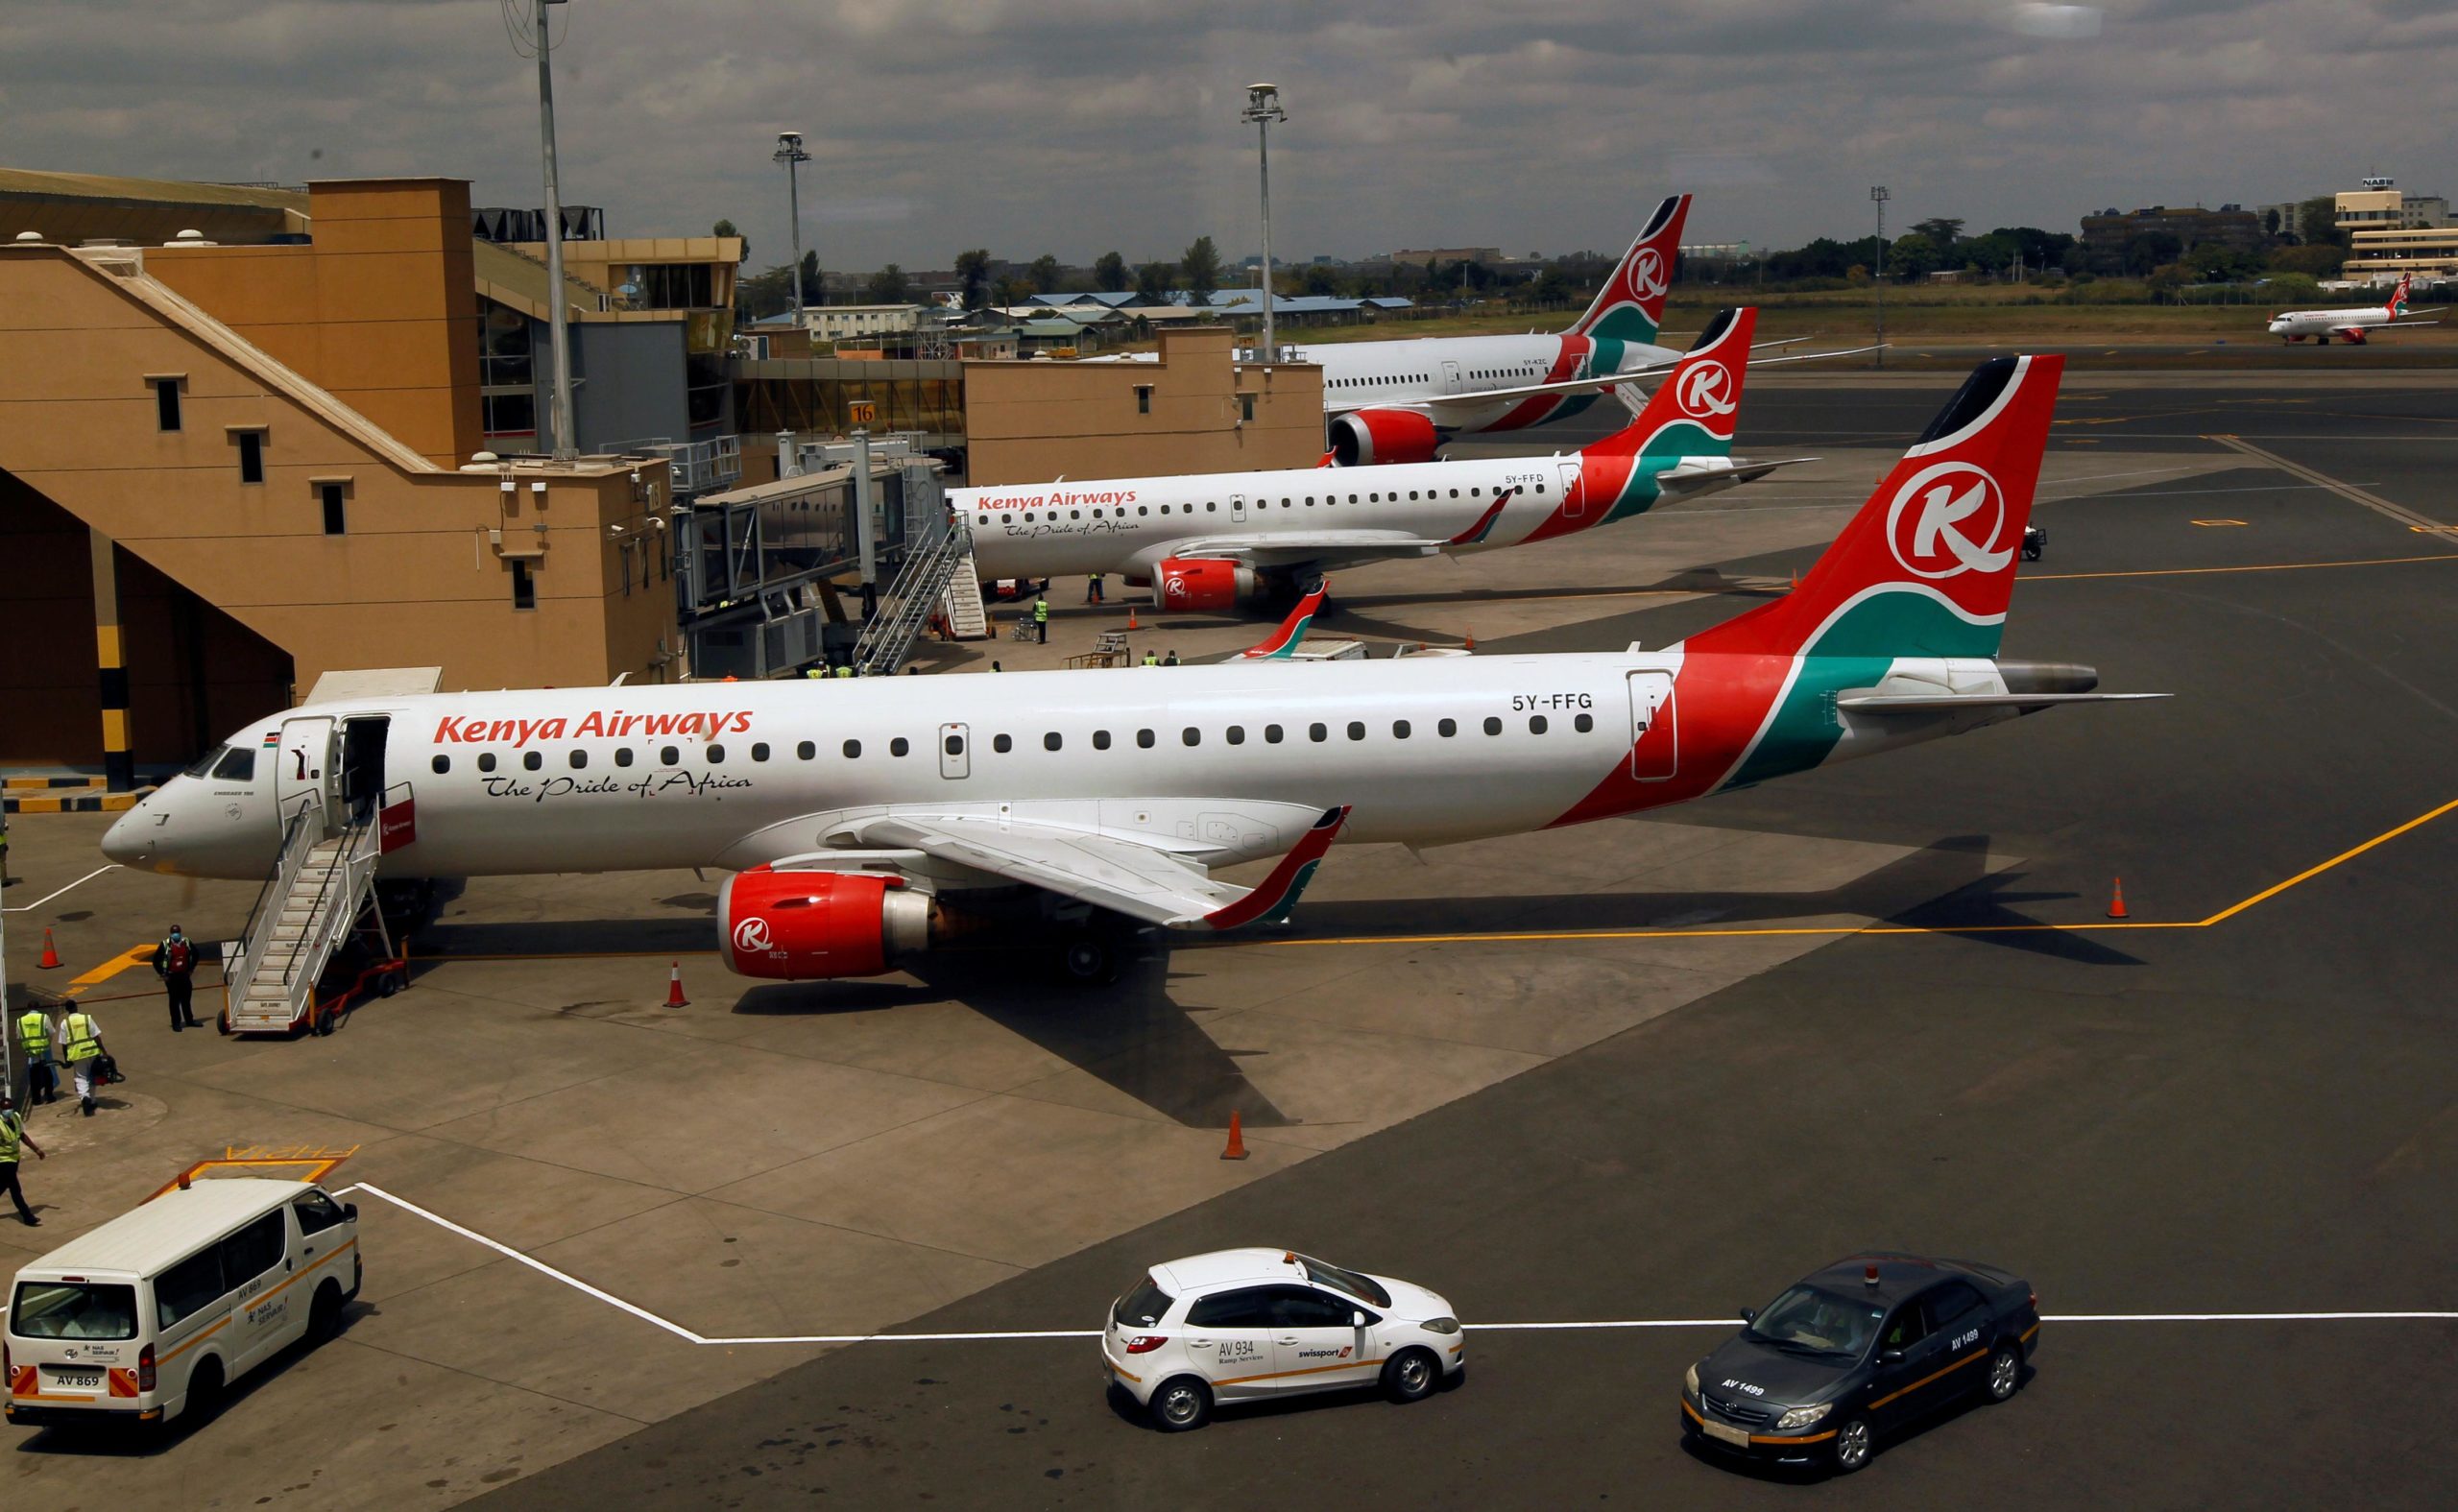 Kenya Airways resumes international flights after virus curbs lifted